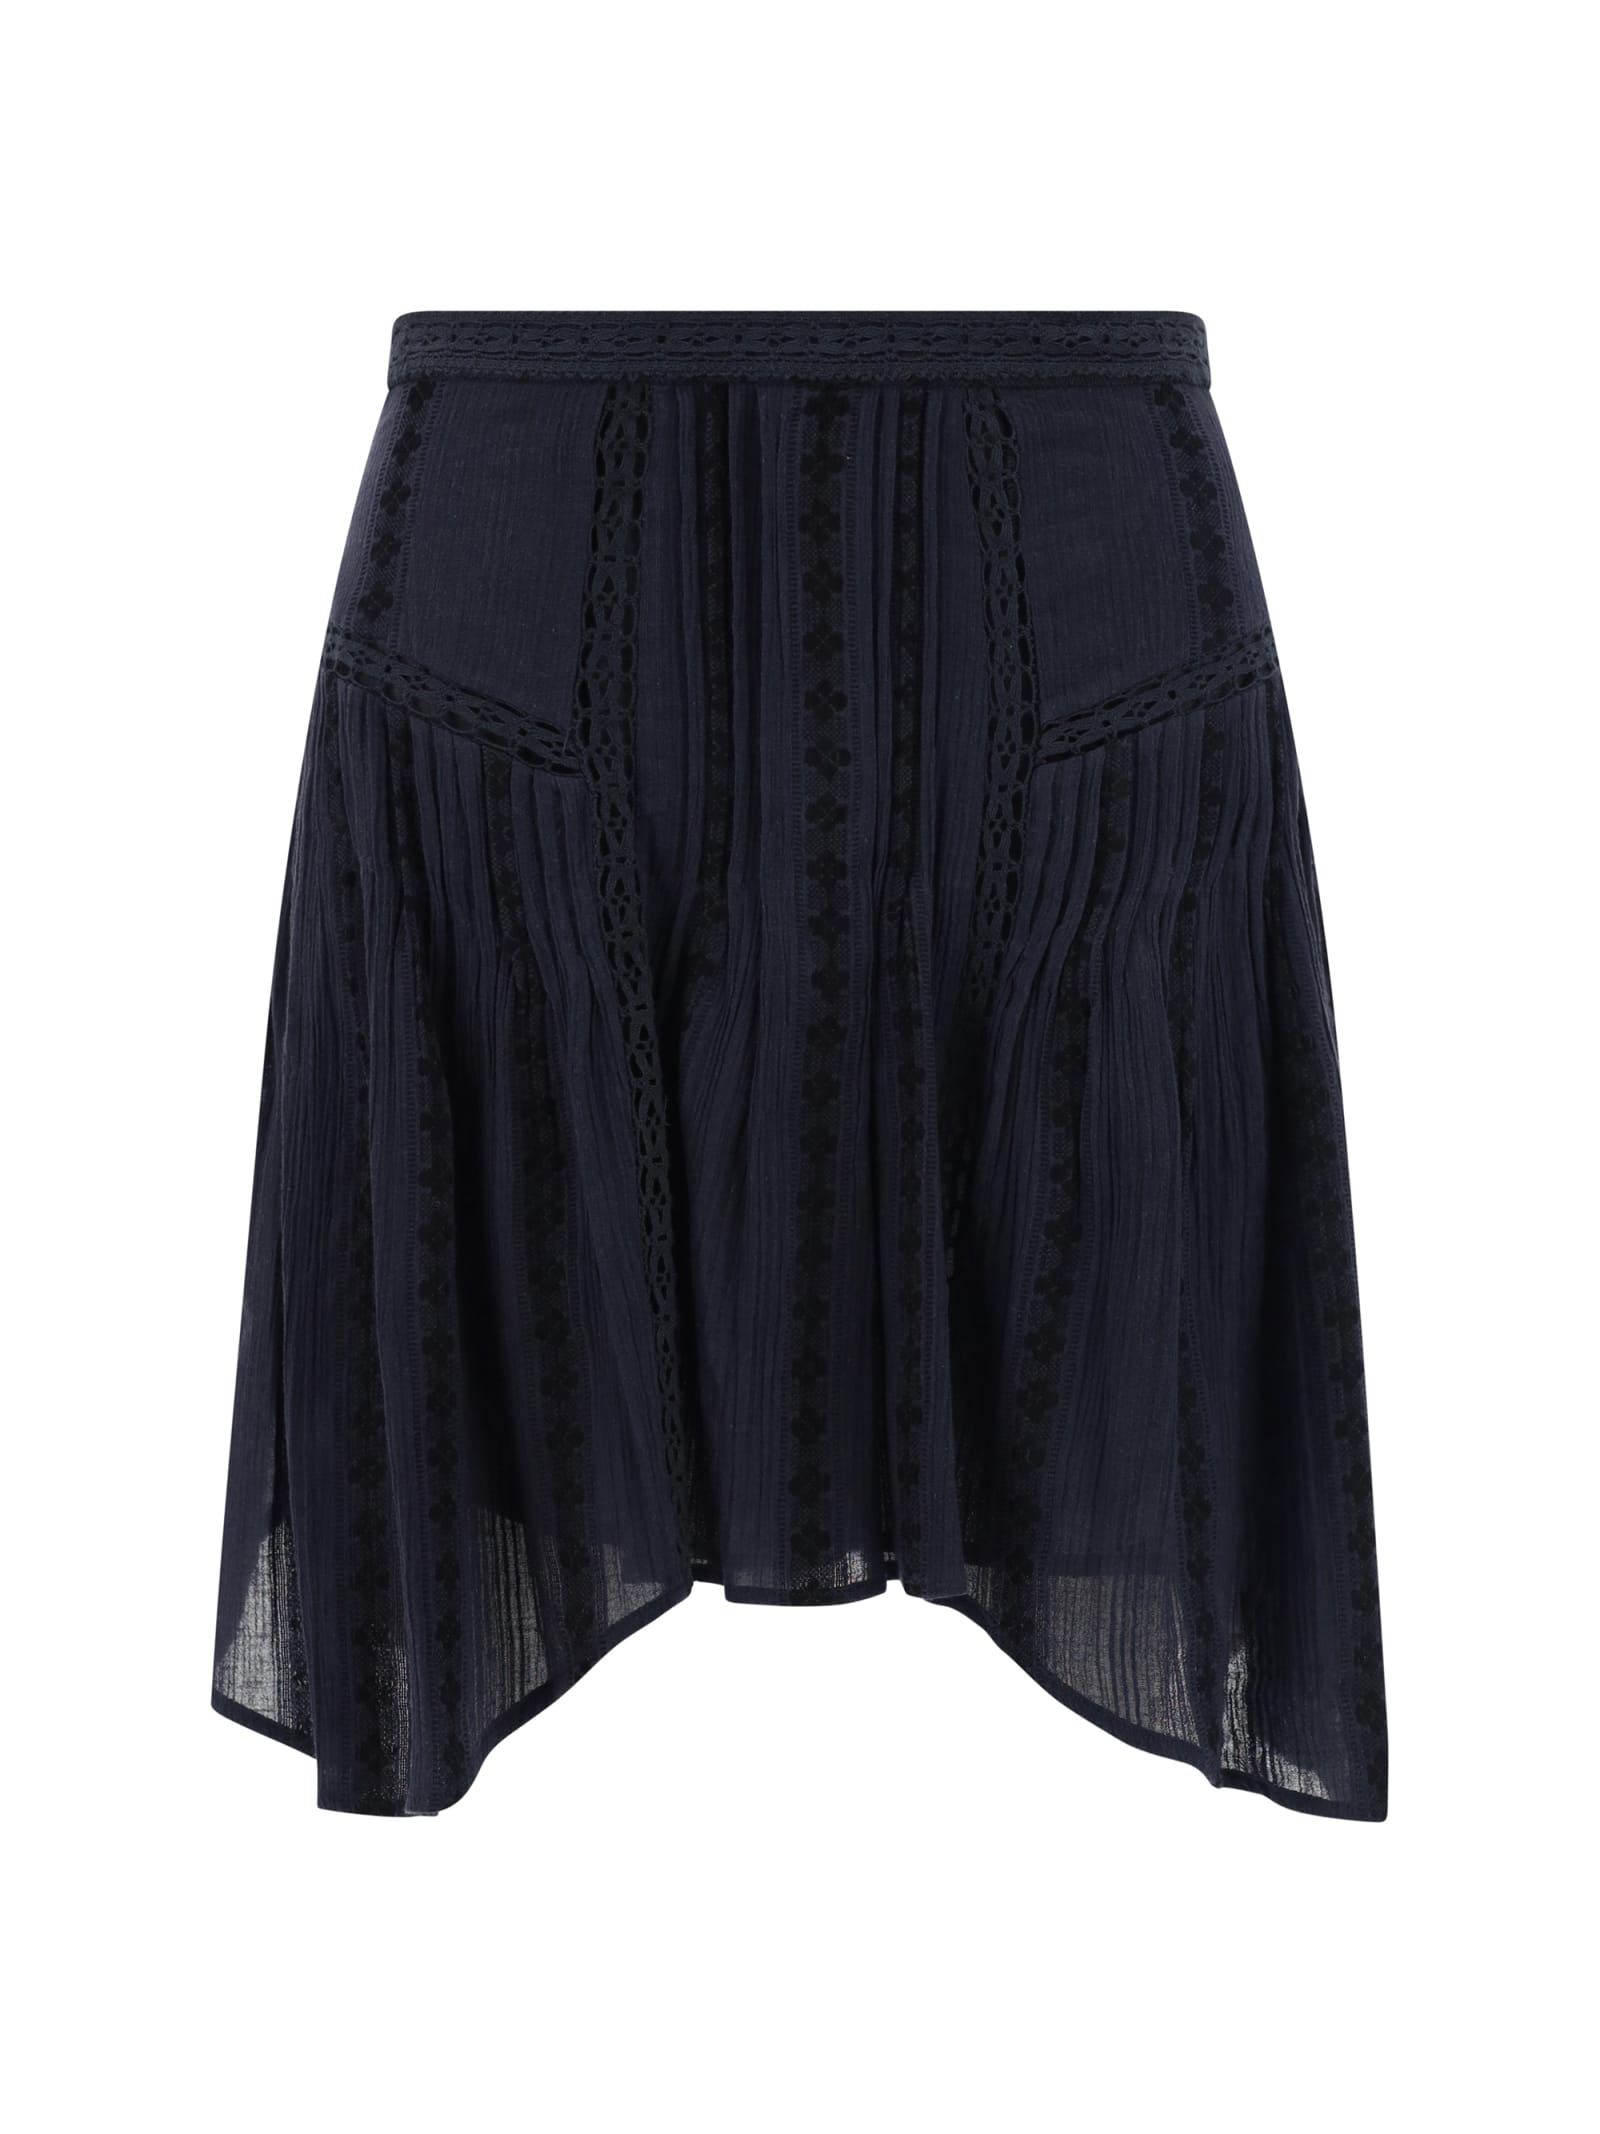 Marant Étoile Jorena Mini Skirt